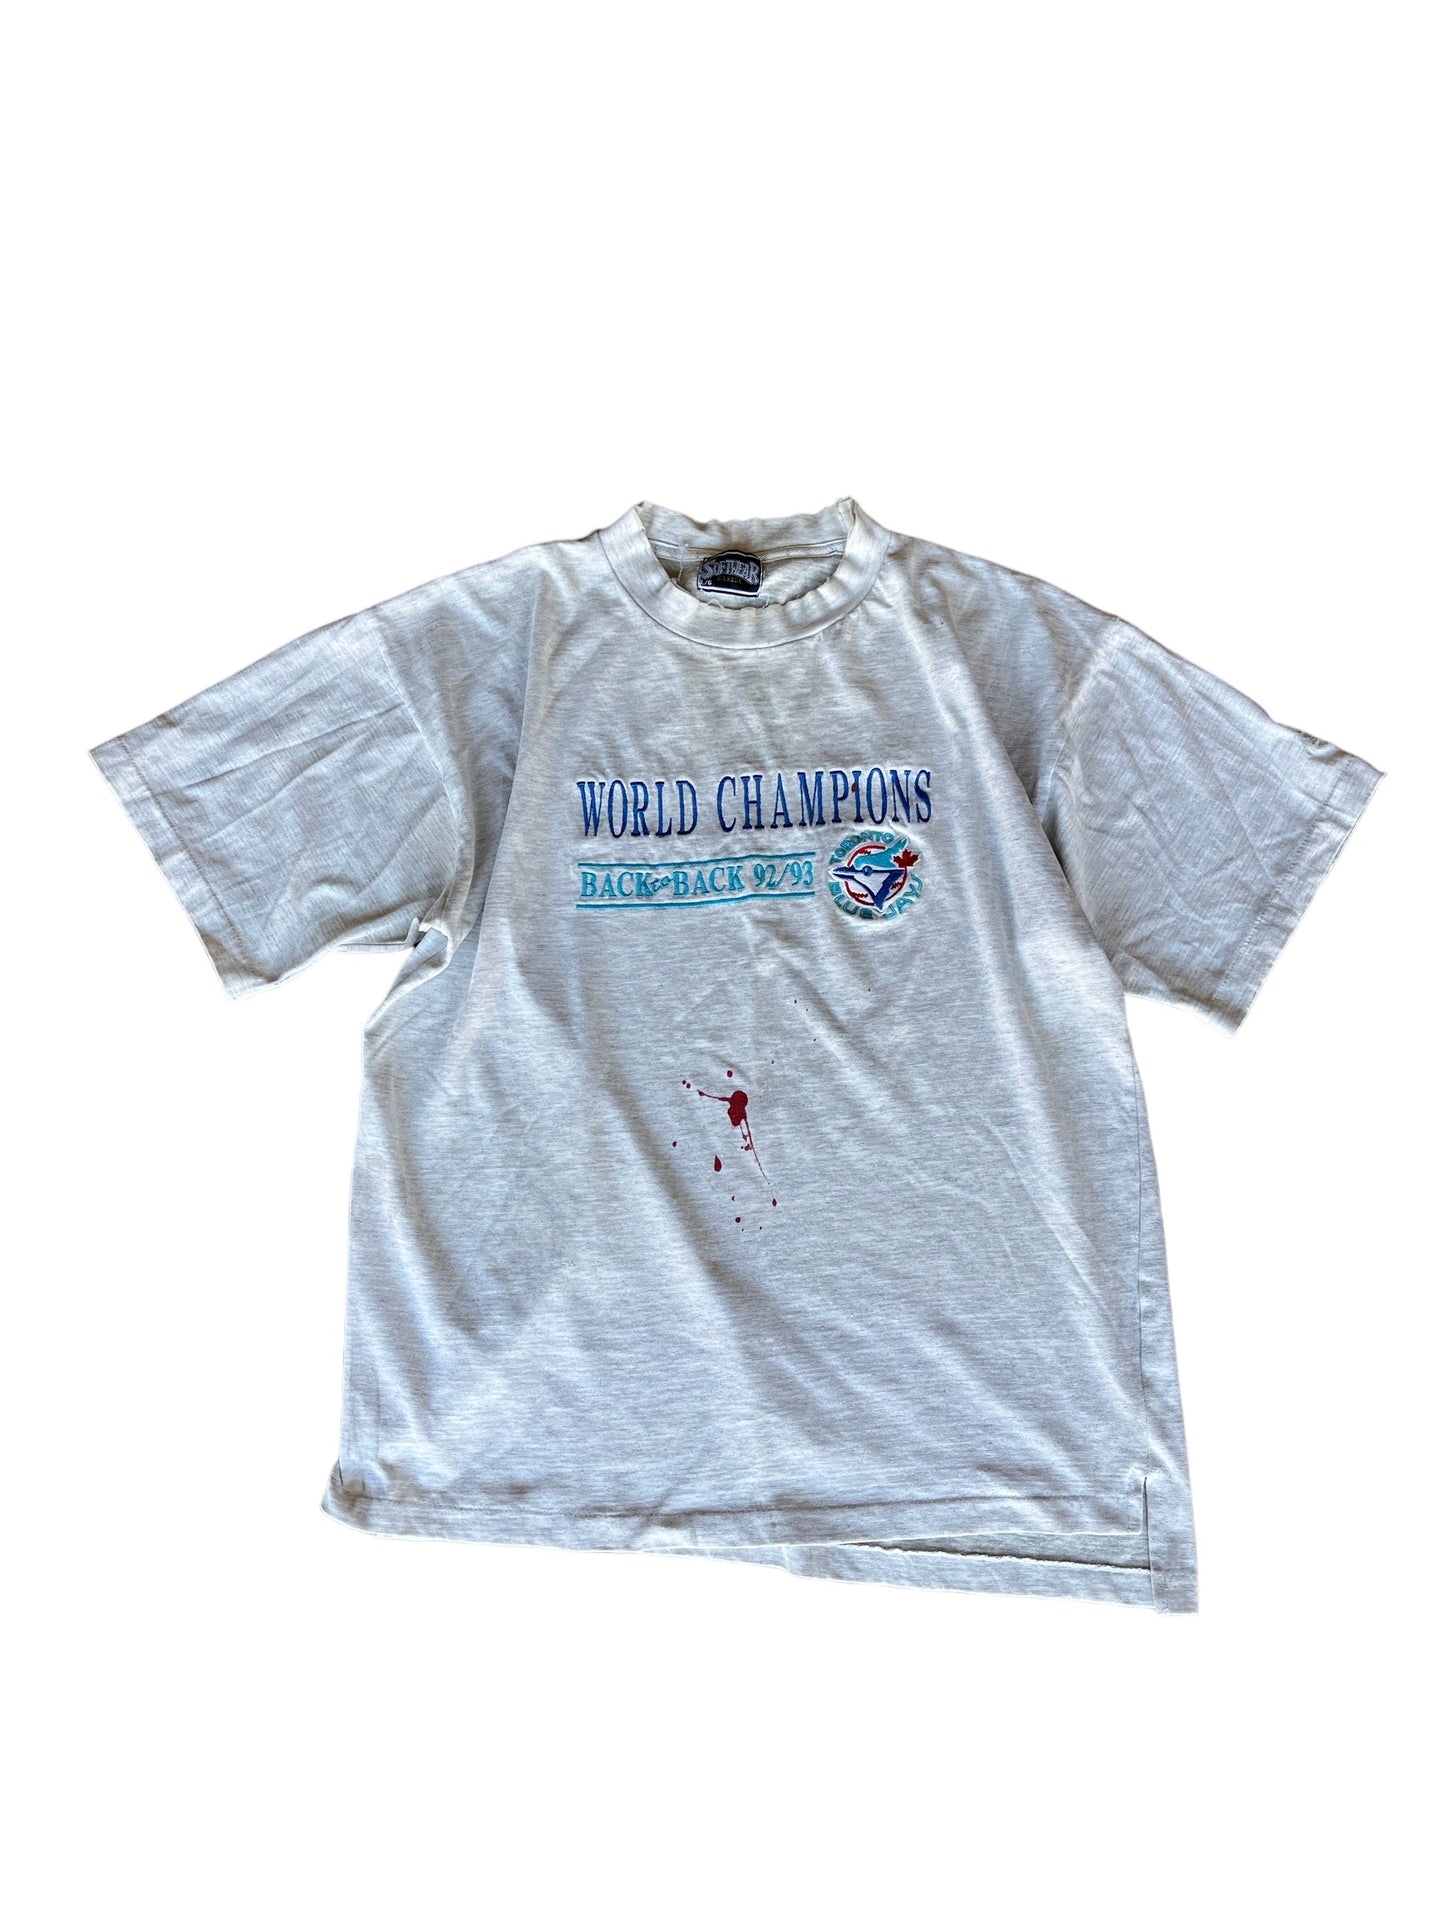 Vintage Softwear Athletics Blue Jays 1992-1993 World Champions Tee